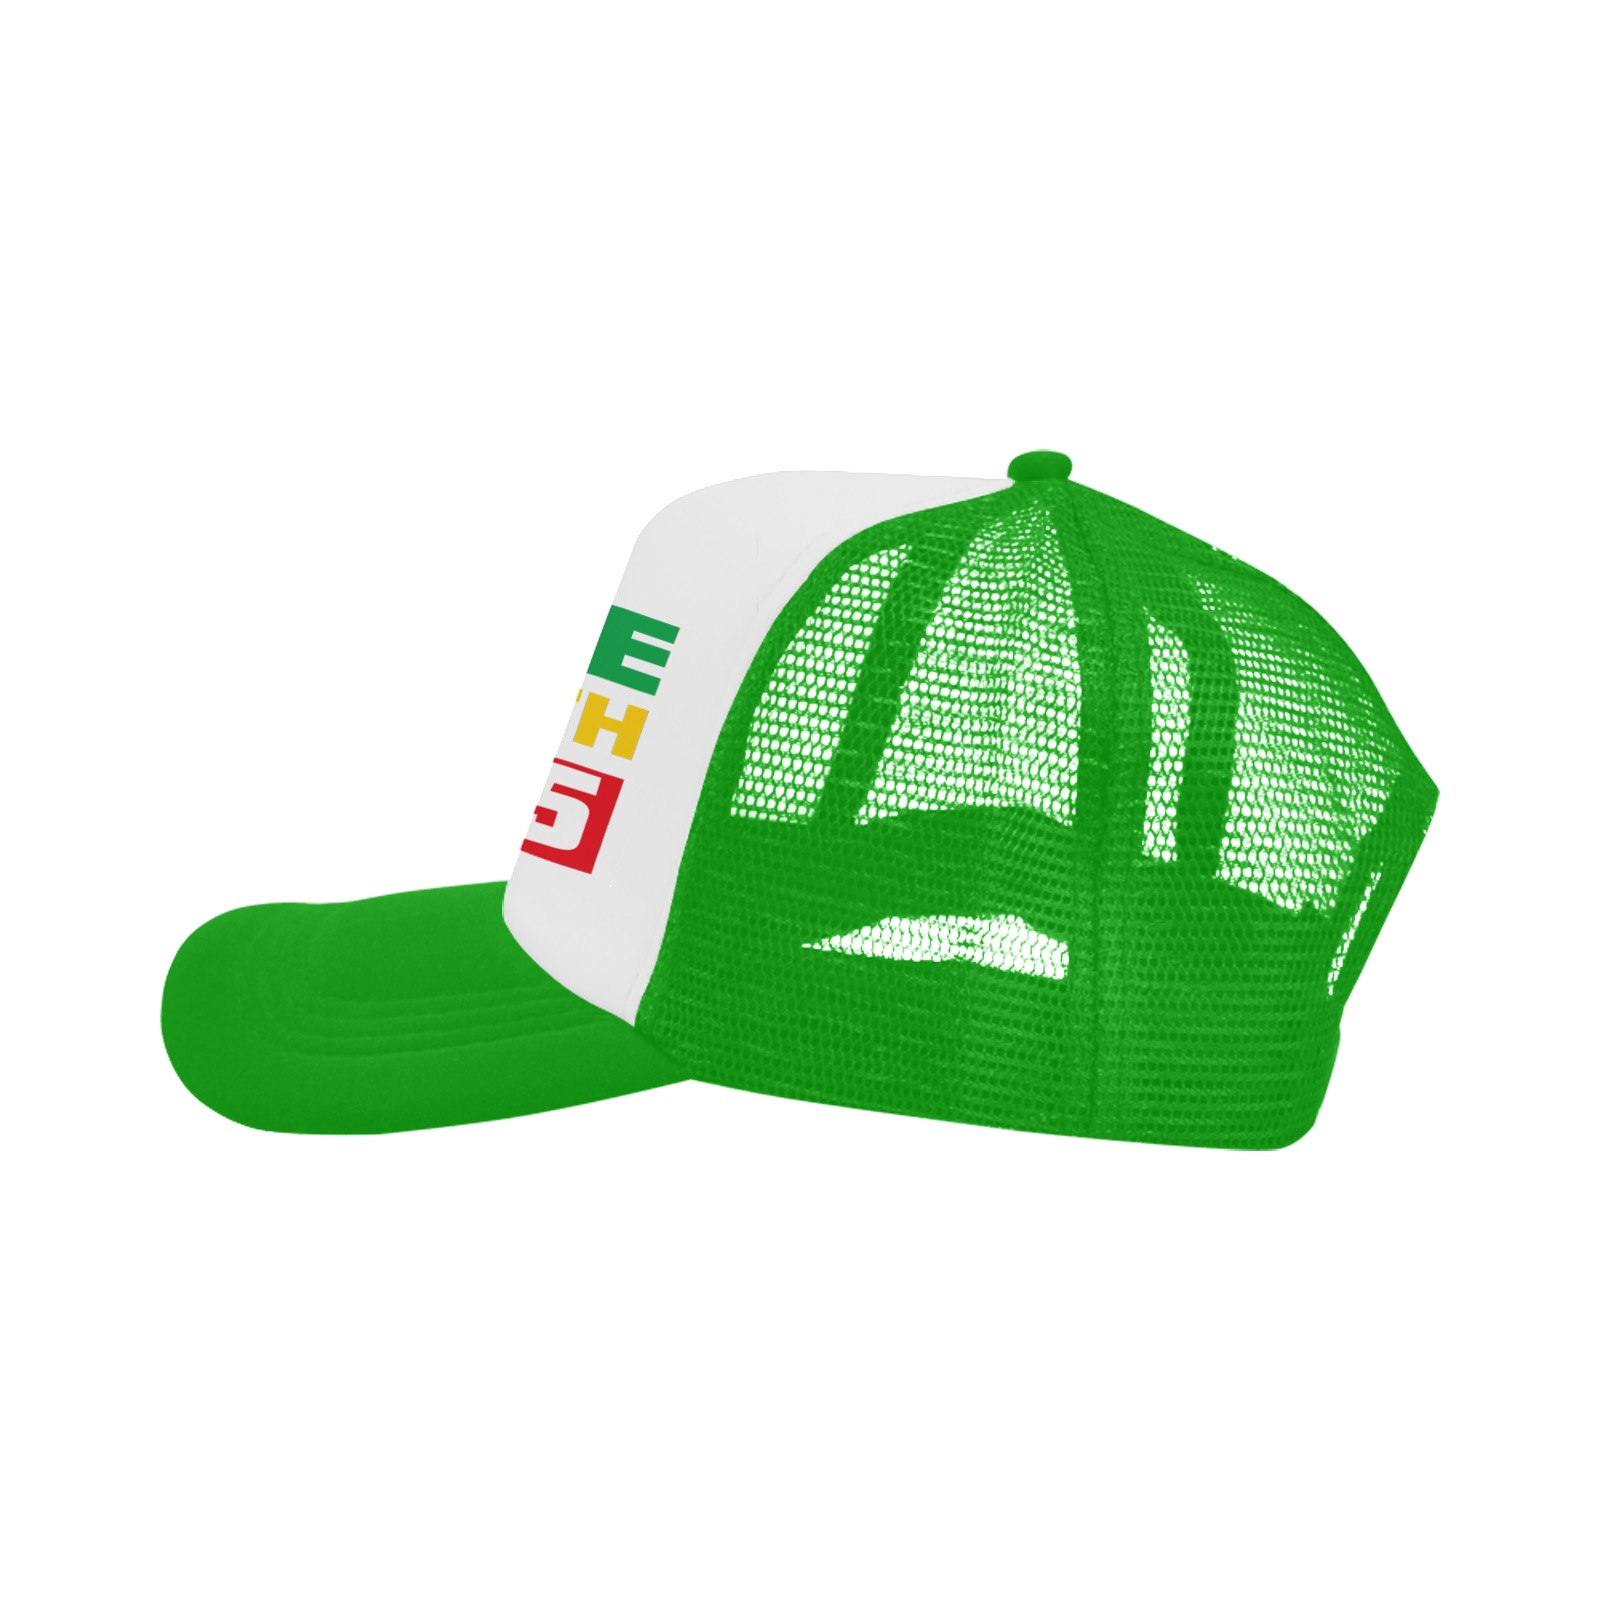 Juneteenth Big Text Hat Green Trucker Trucker Hat